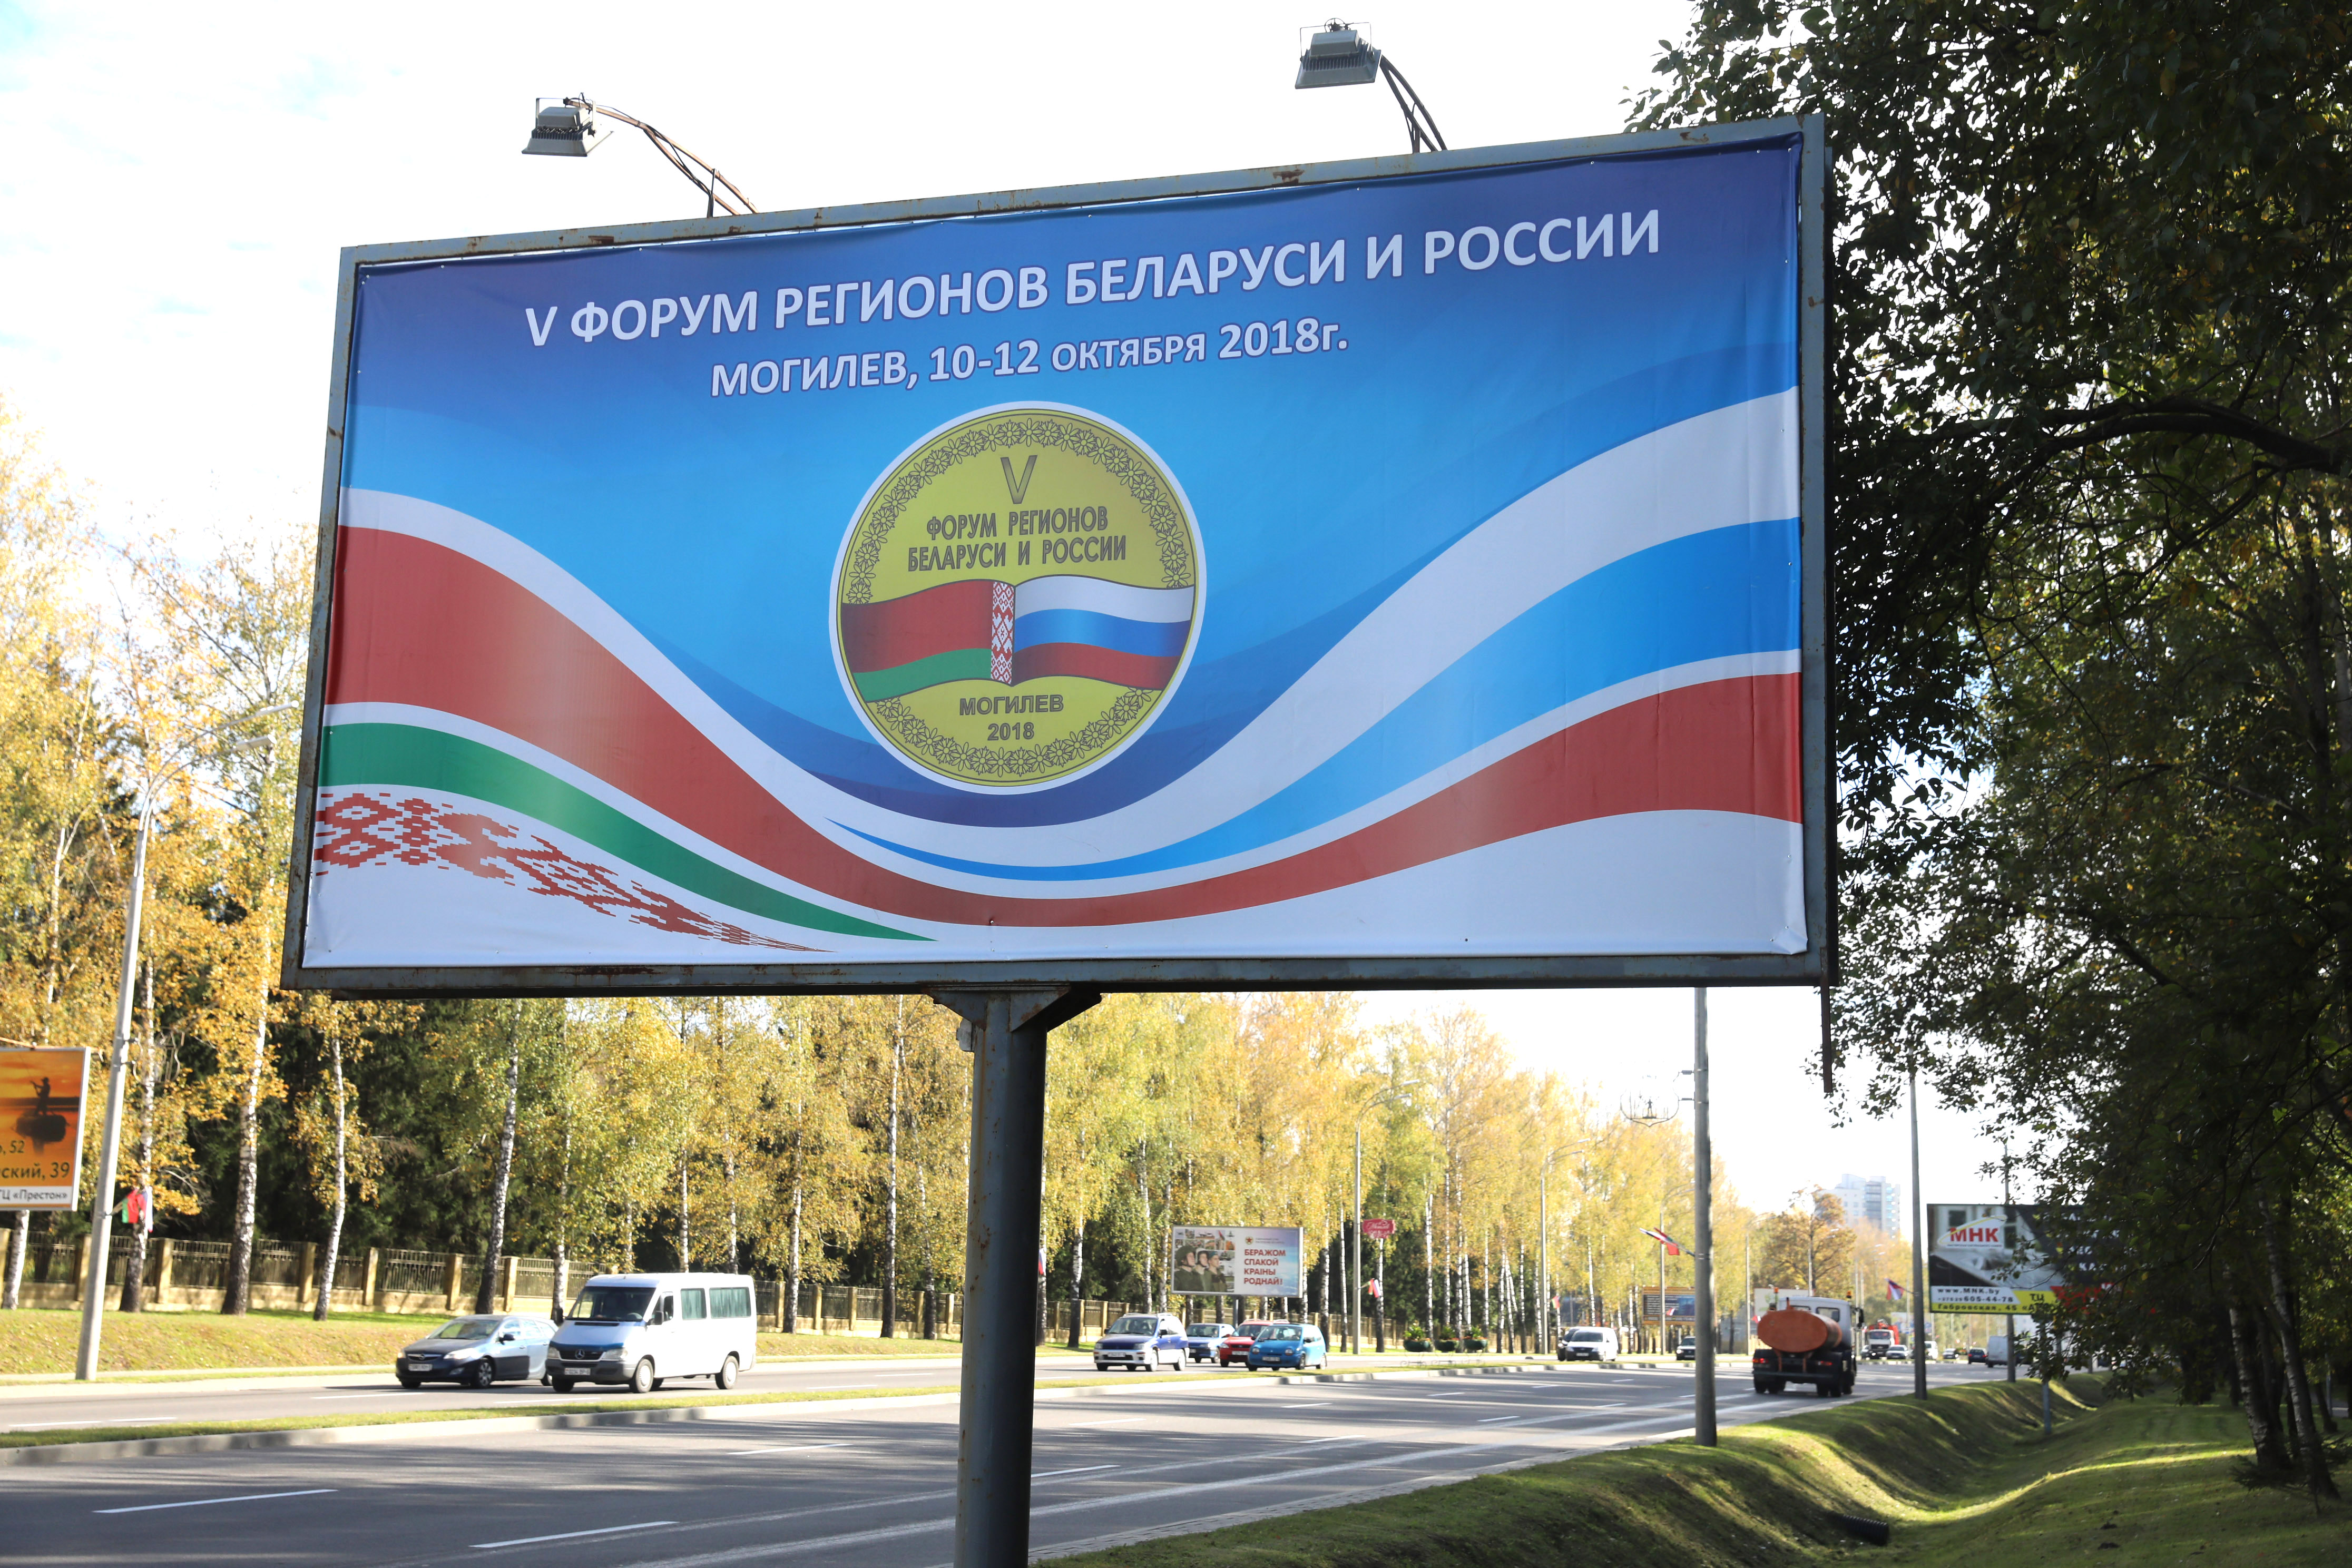 В Могилеве открывается V Форум регионов России и Беларуси